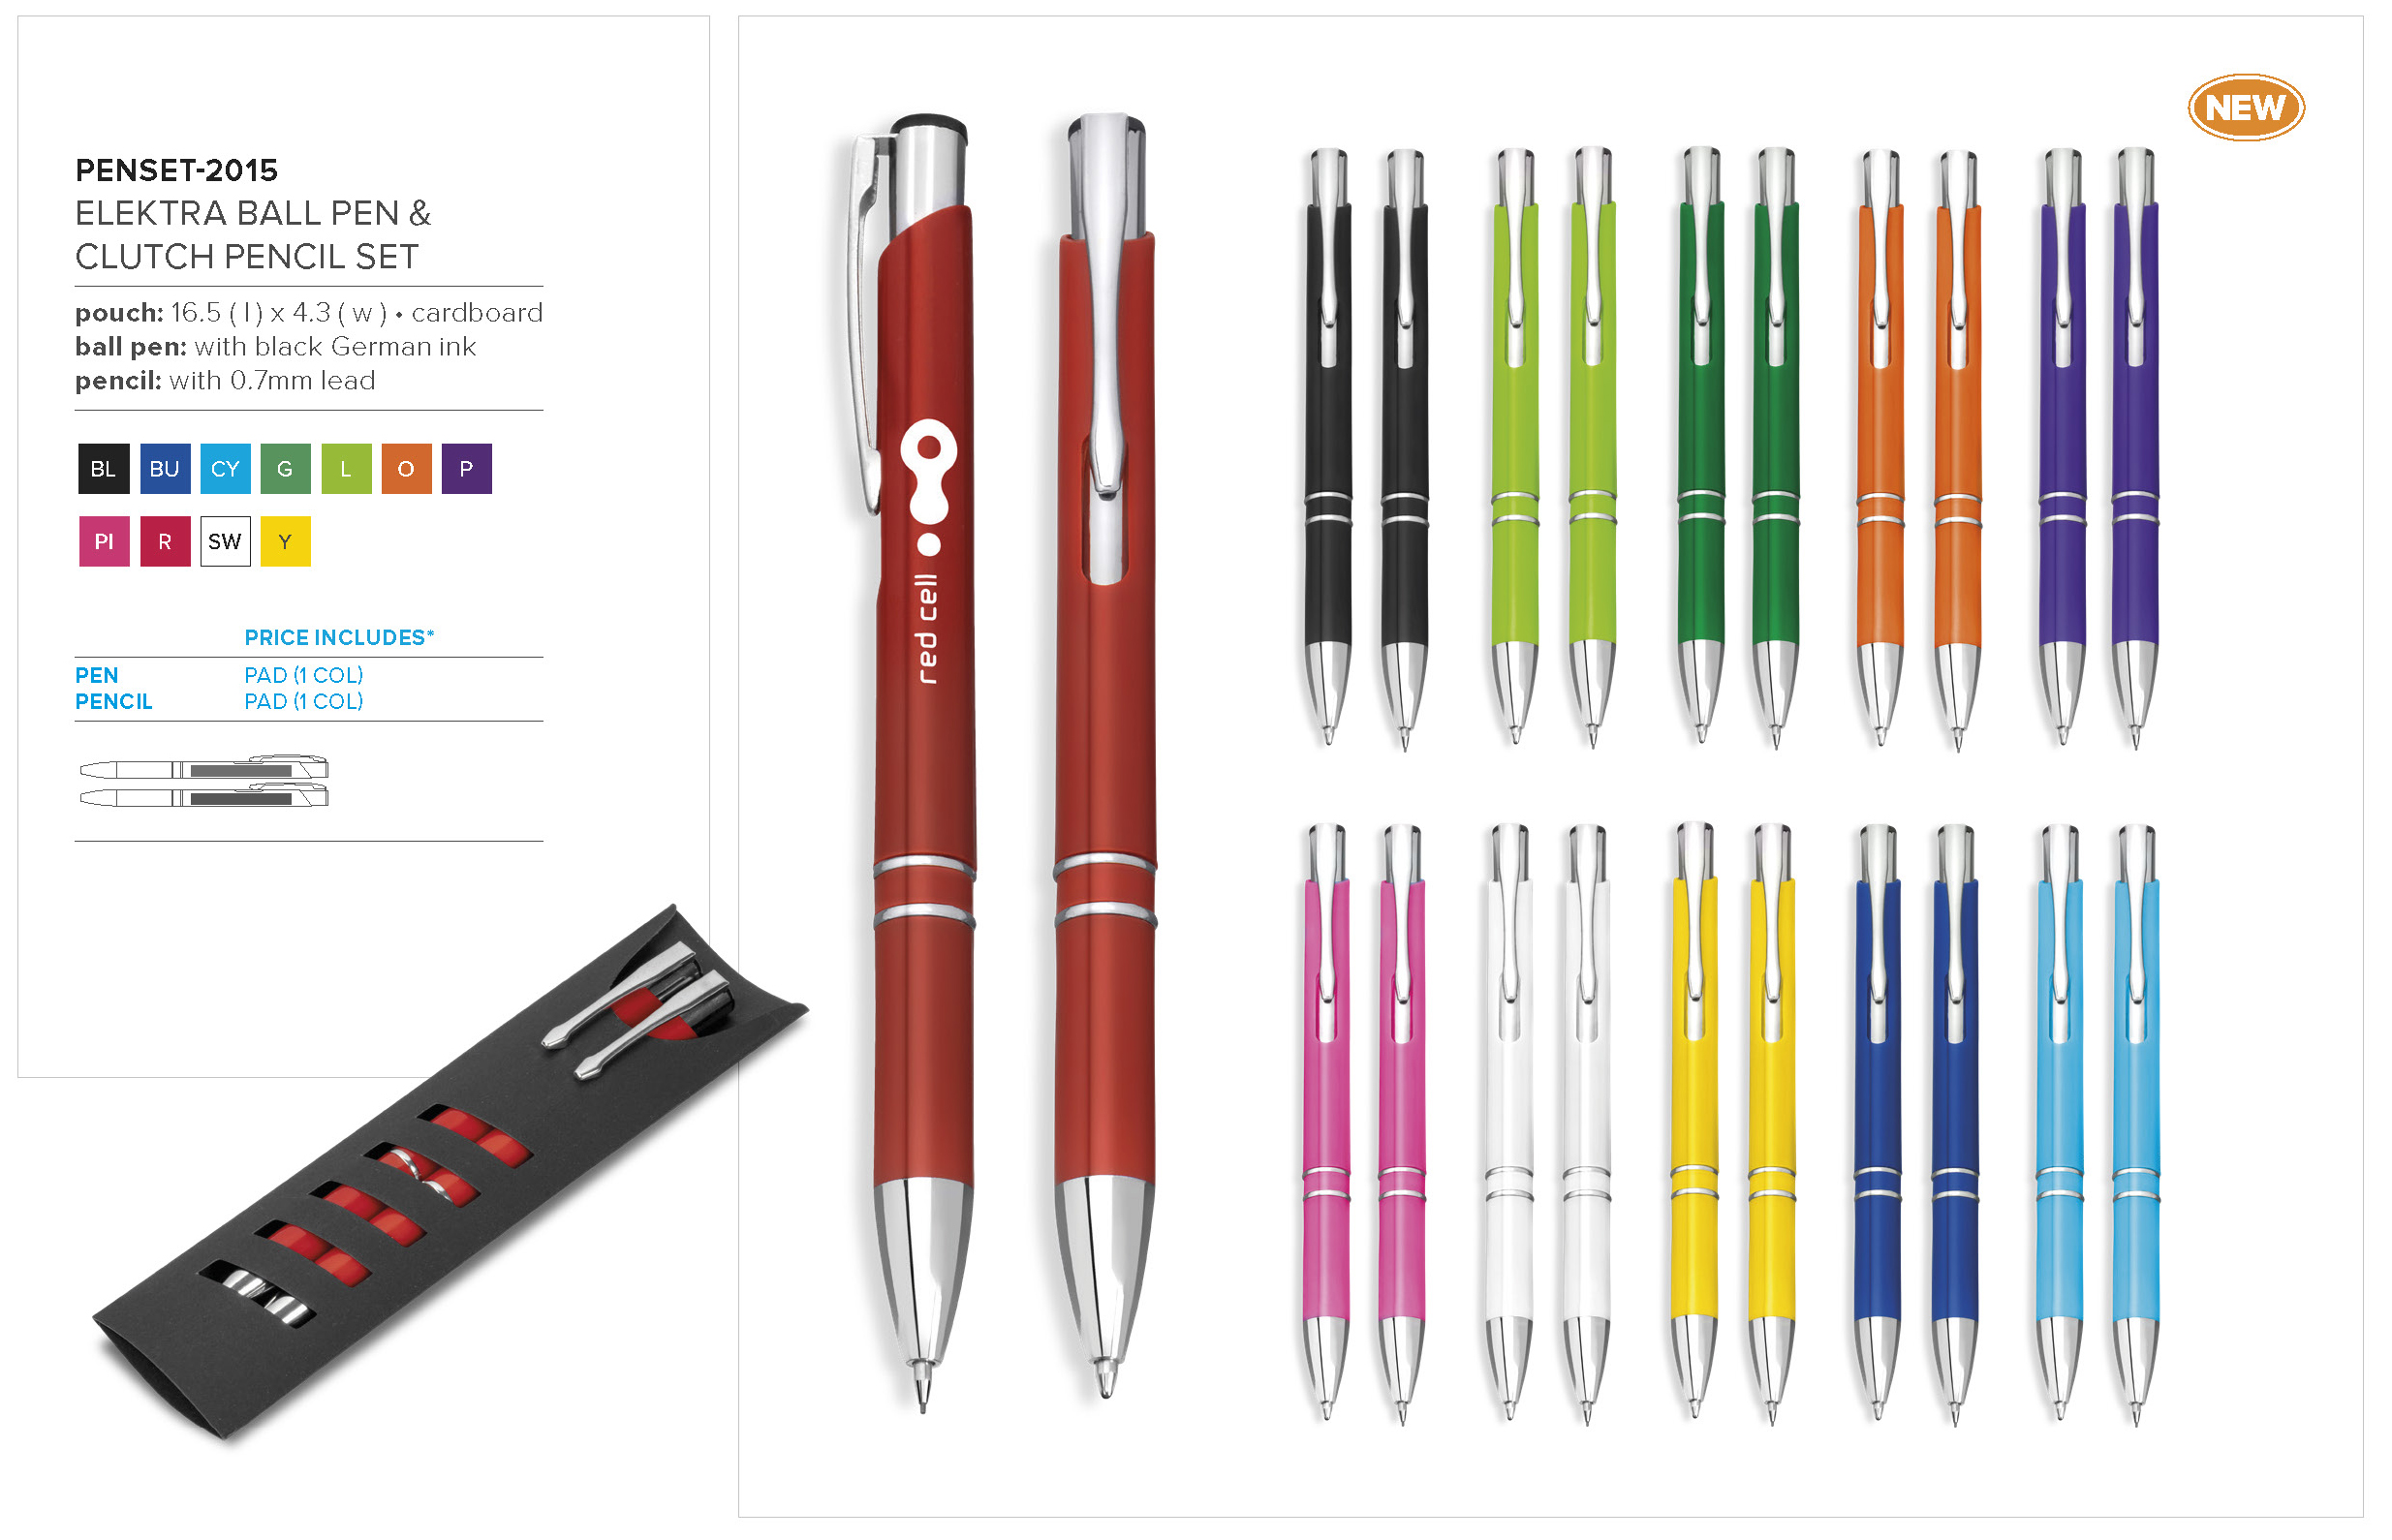 PENSET-2015 - Electra Ball Pen & Pencil Set - Catalogue Image